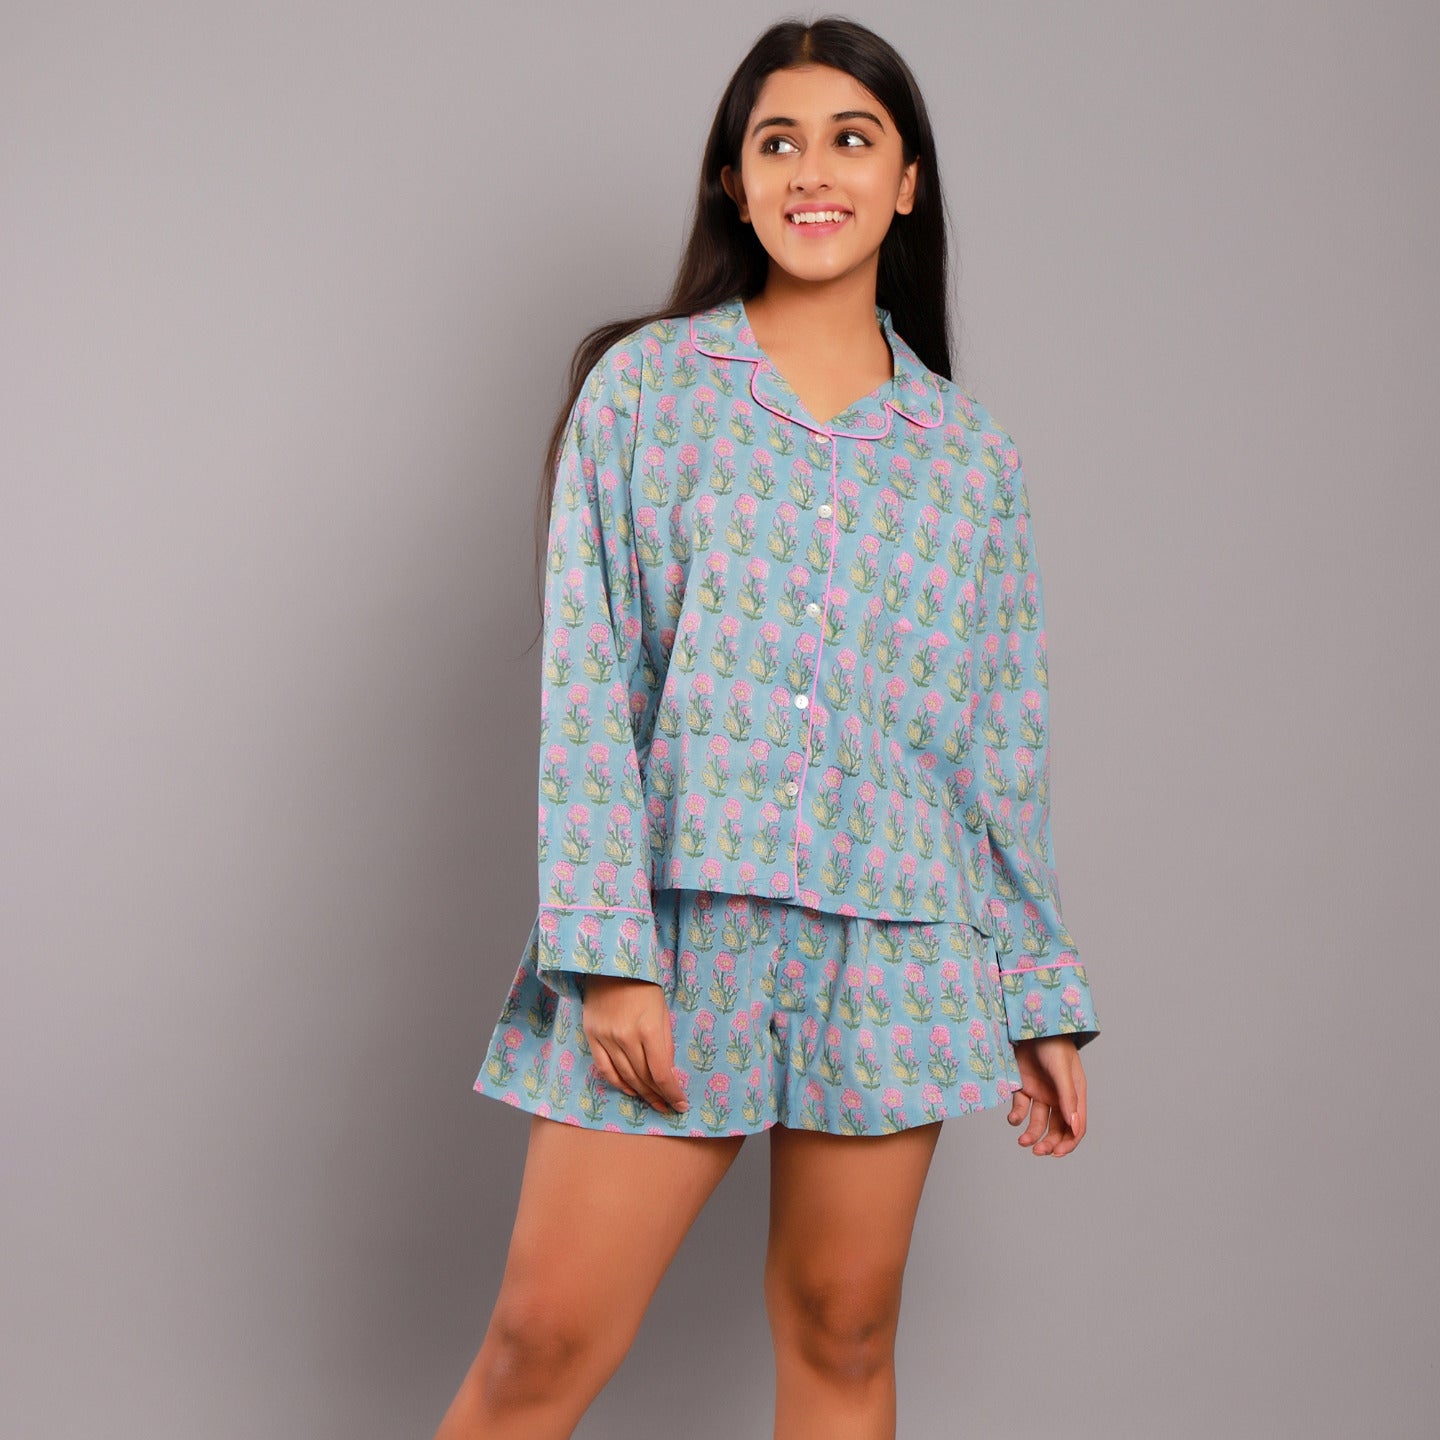 Women nightsuit shorts Ethnic buti blue-pink block printed